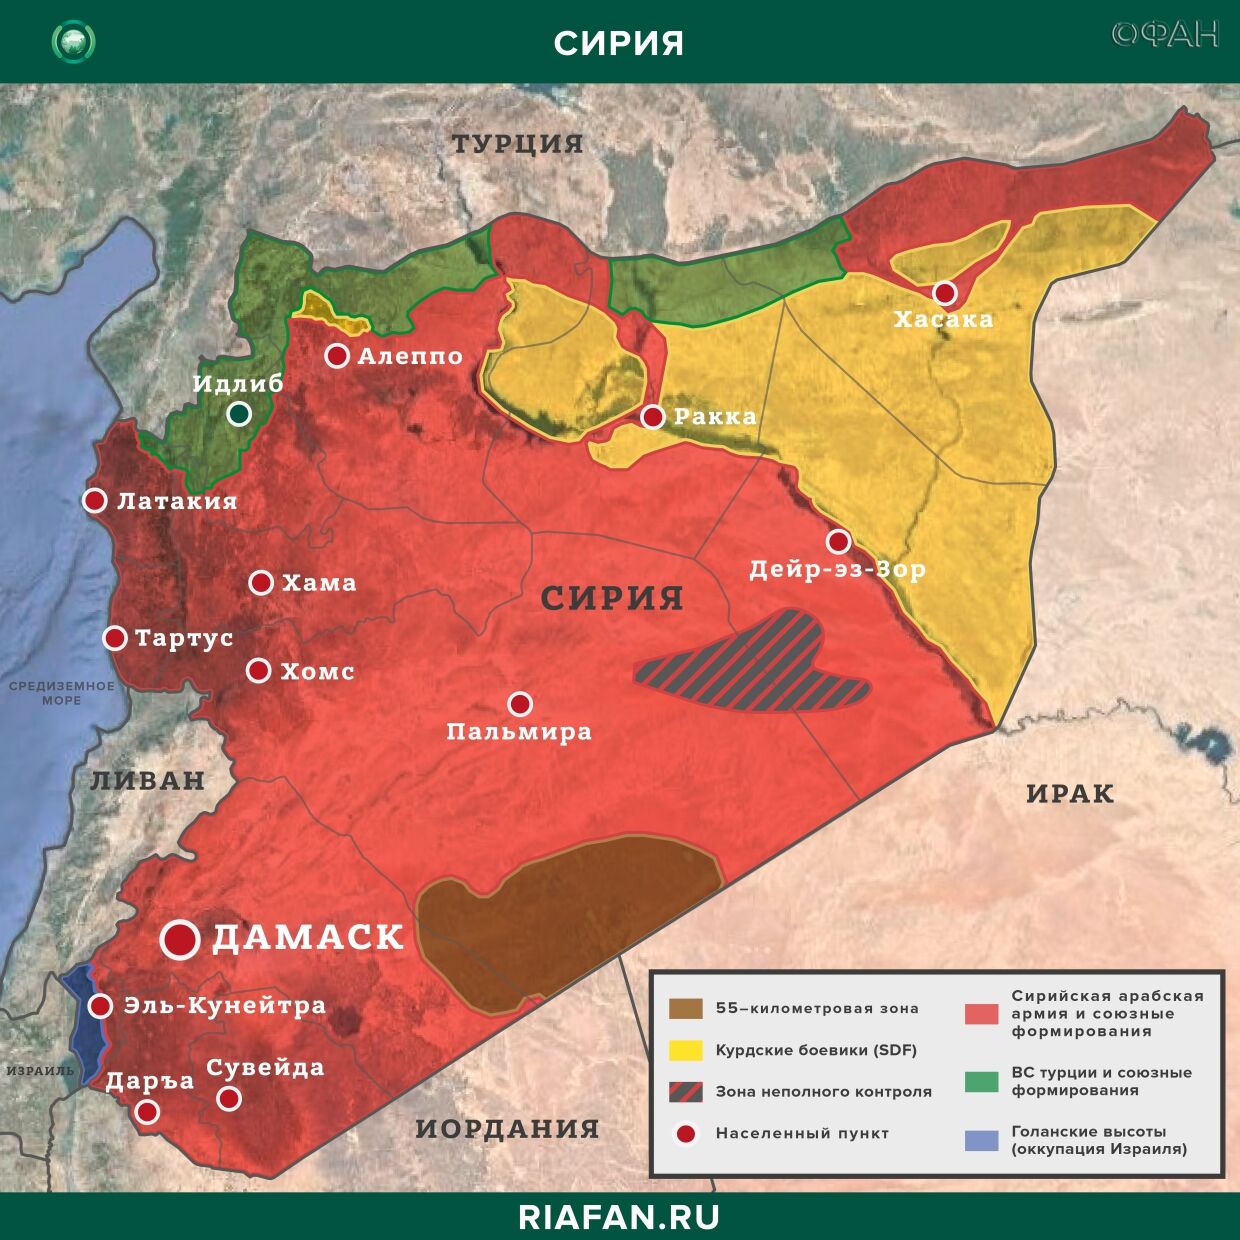 Сирия итоги за сутки на 26 апреля 06.00: США создают группировку для удержания контроля над нефтью, атака на штаб ХТШ в Идлибе